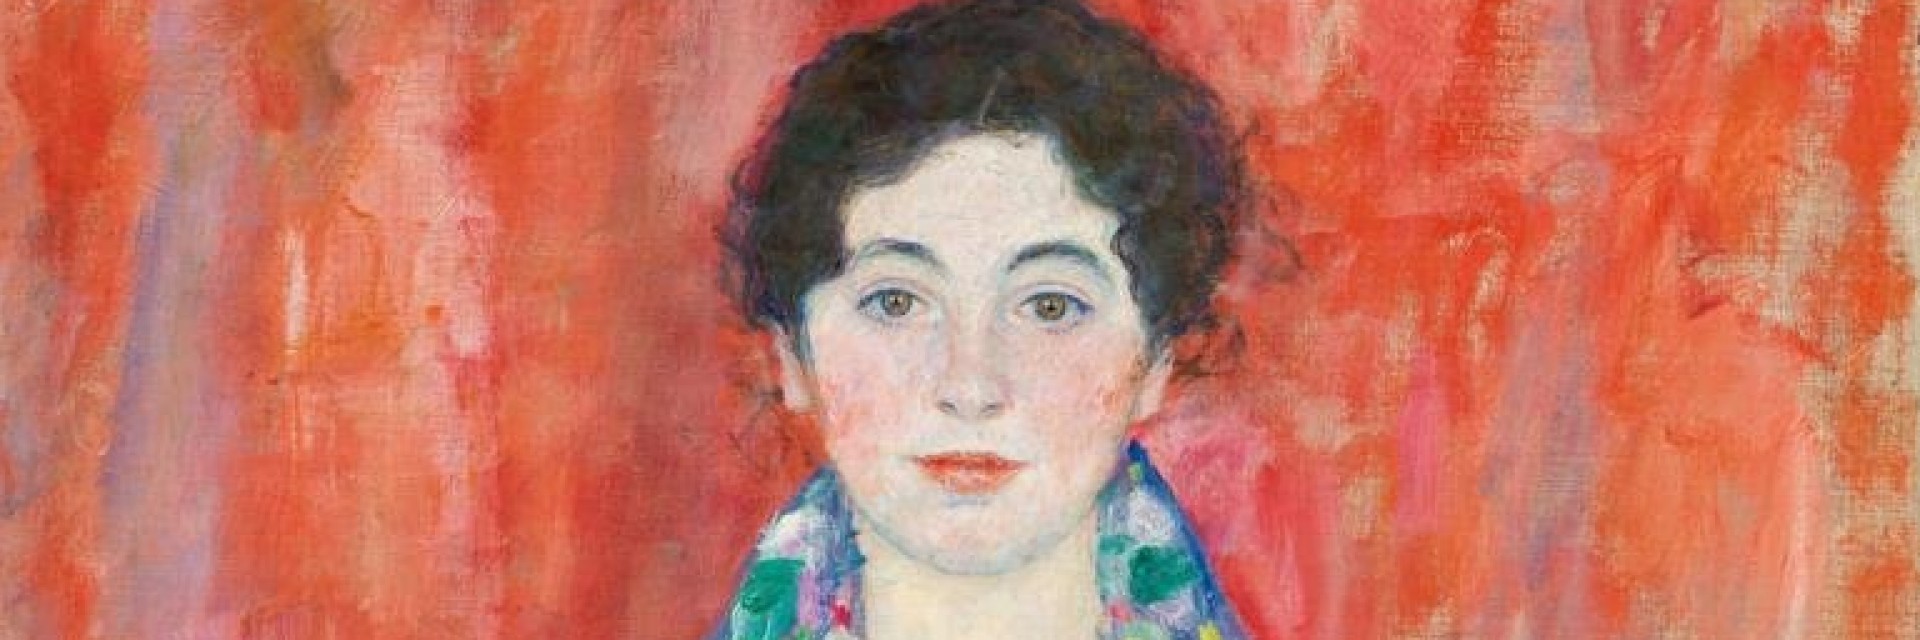 Криминална история около "Портрет на госпожица Лизер" от Густав Климт?